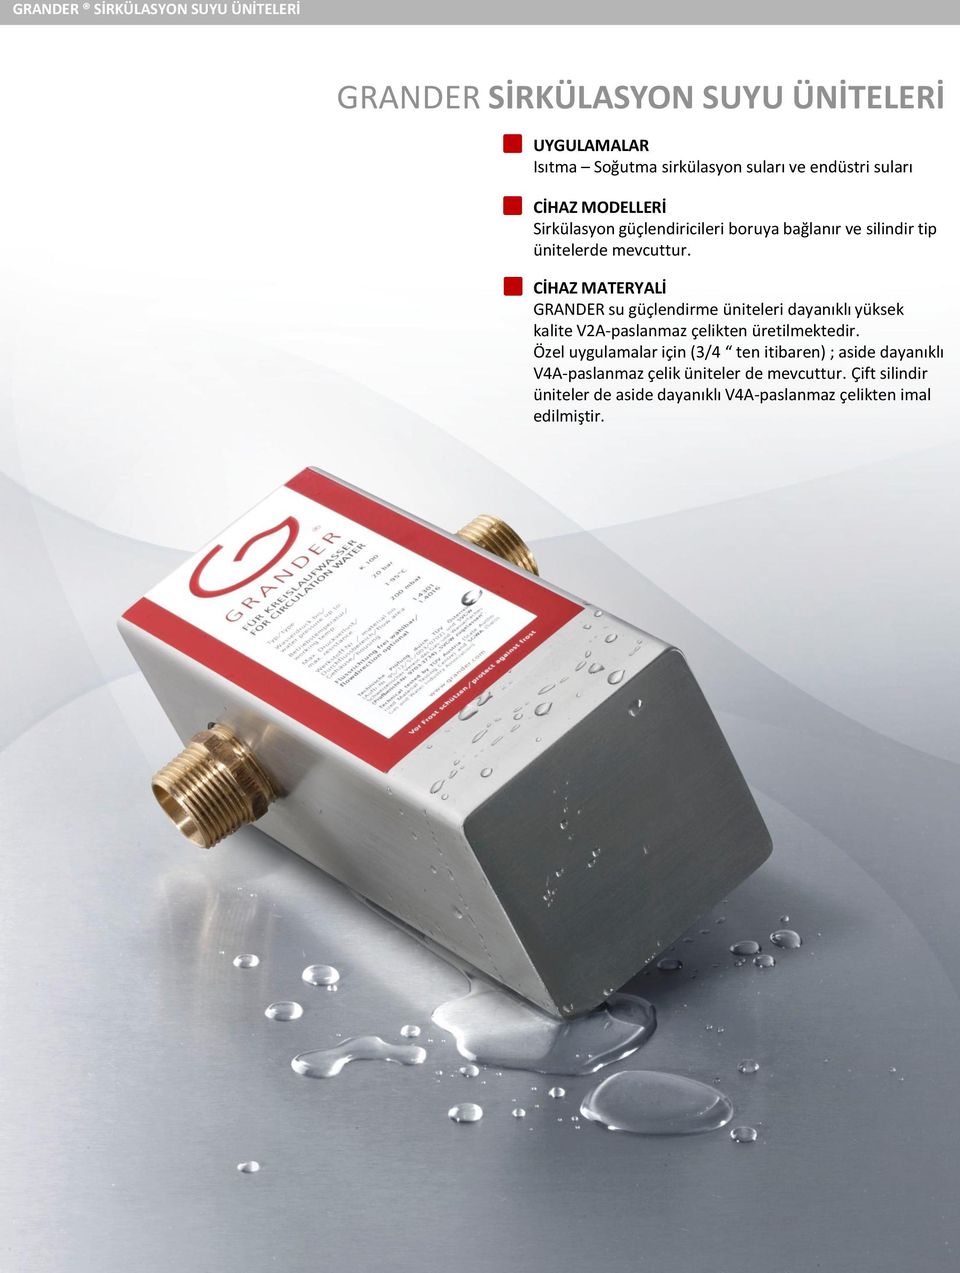 CİHAZ MATERYALİ GRANDER su güçlendirme üniteleri dayanıklı yüksek kalite V2A-paslanmaz çelikten üretilmektedir.